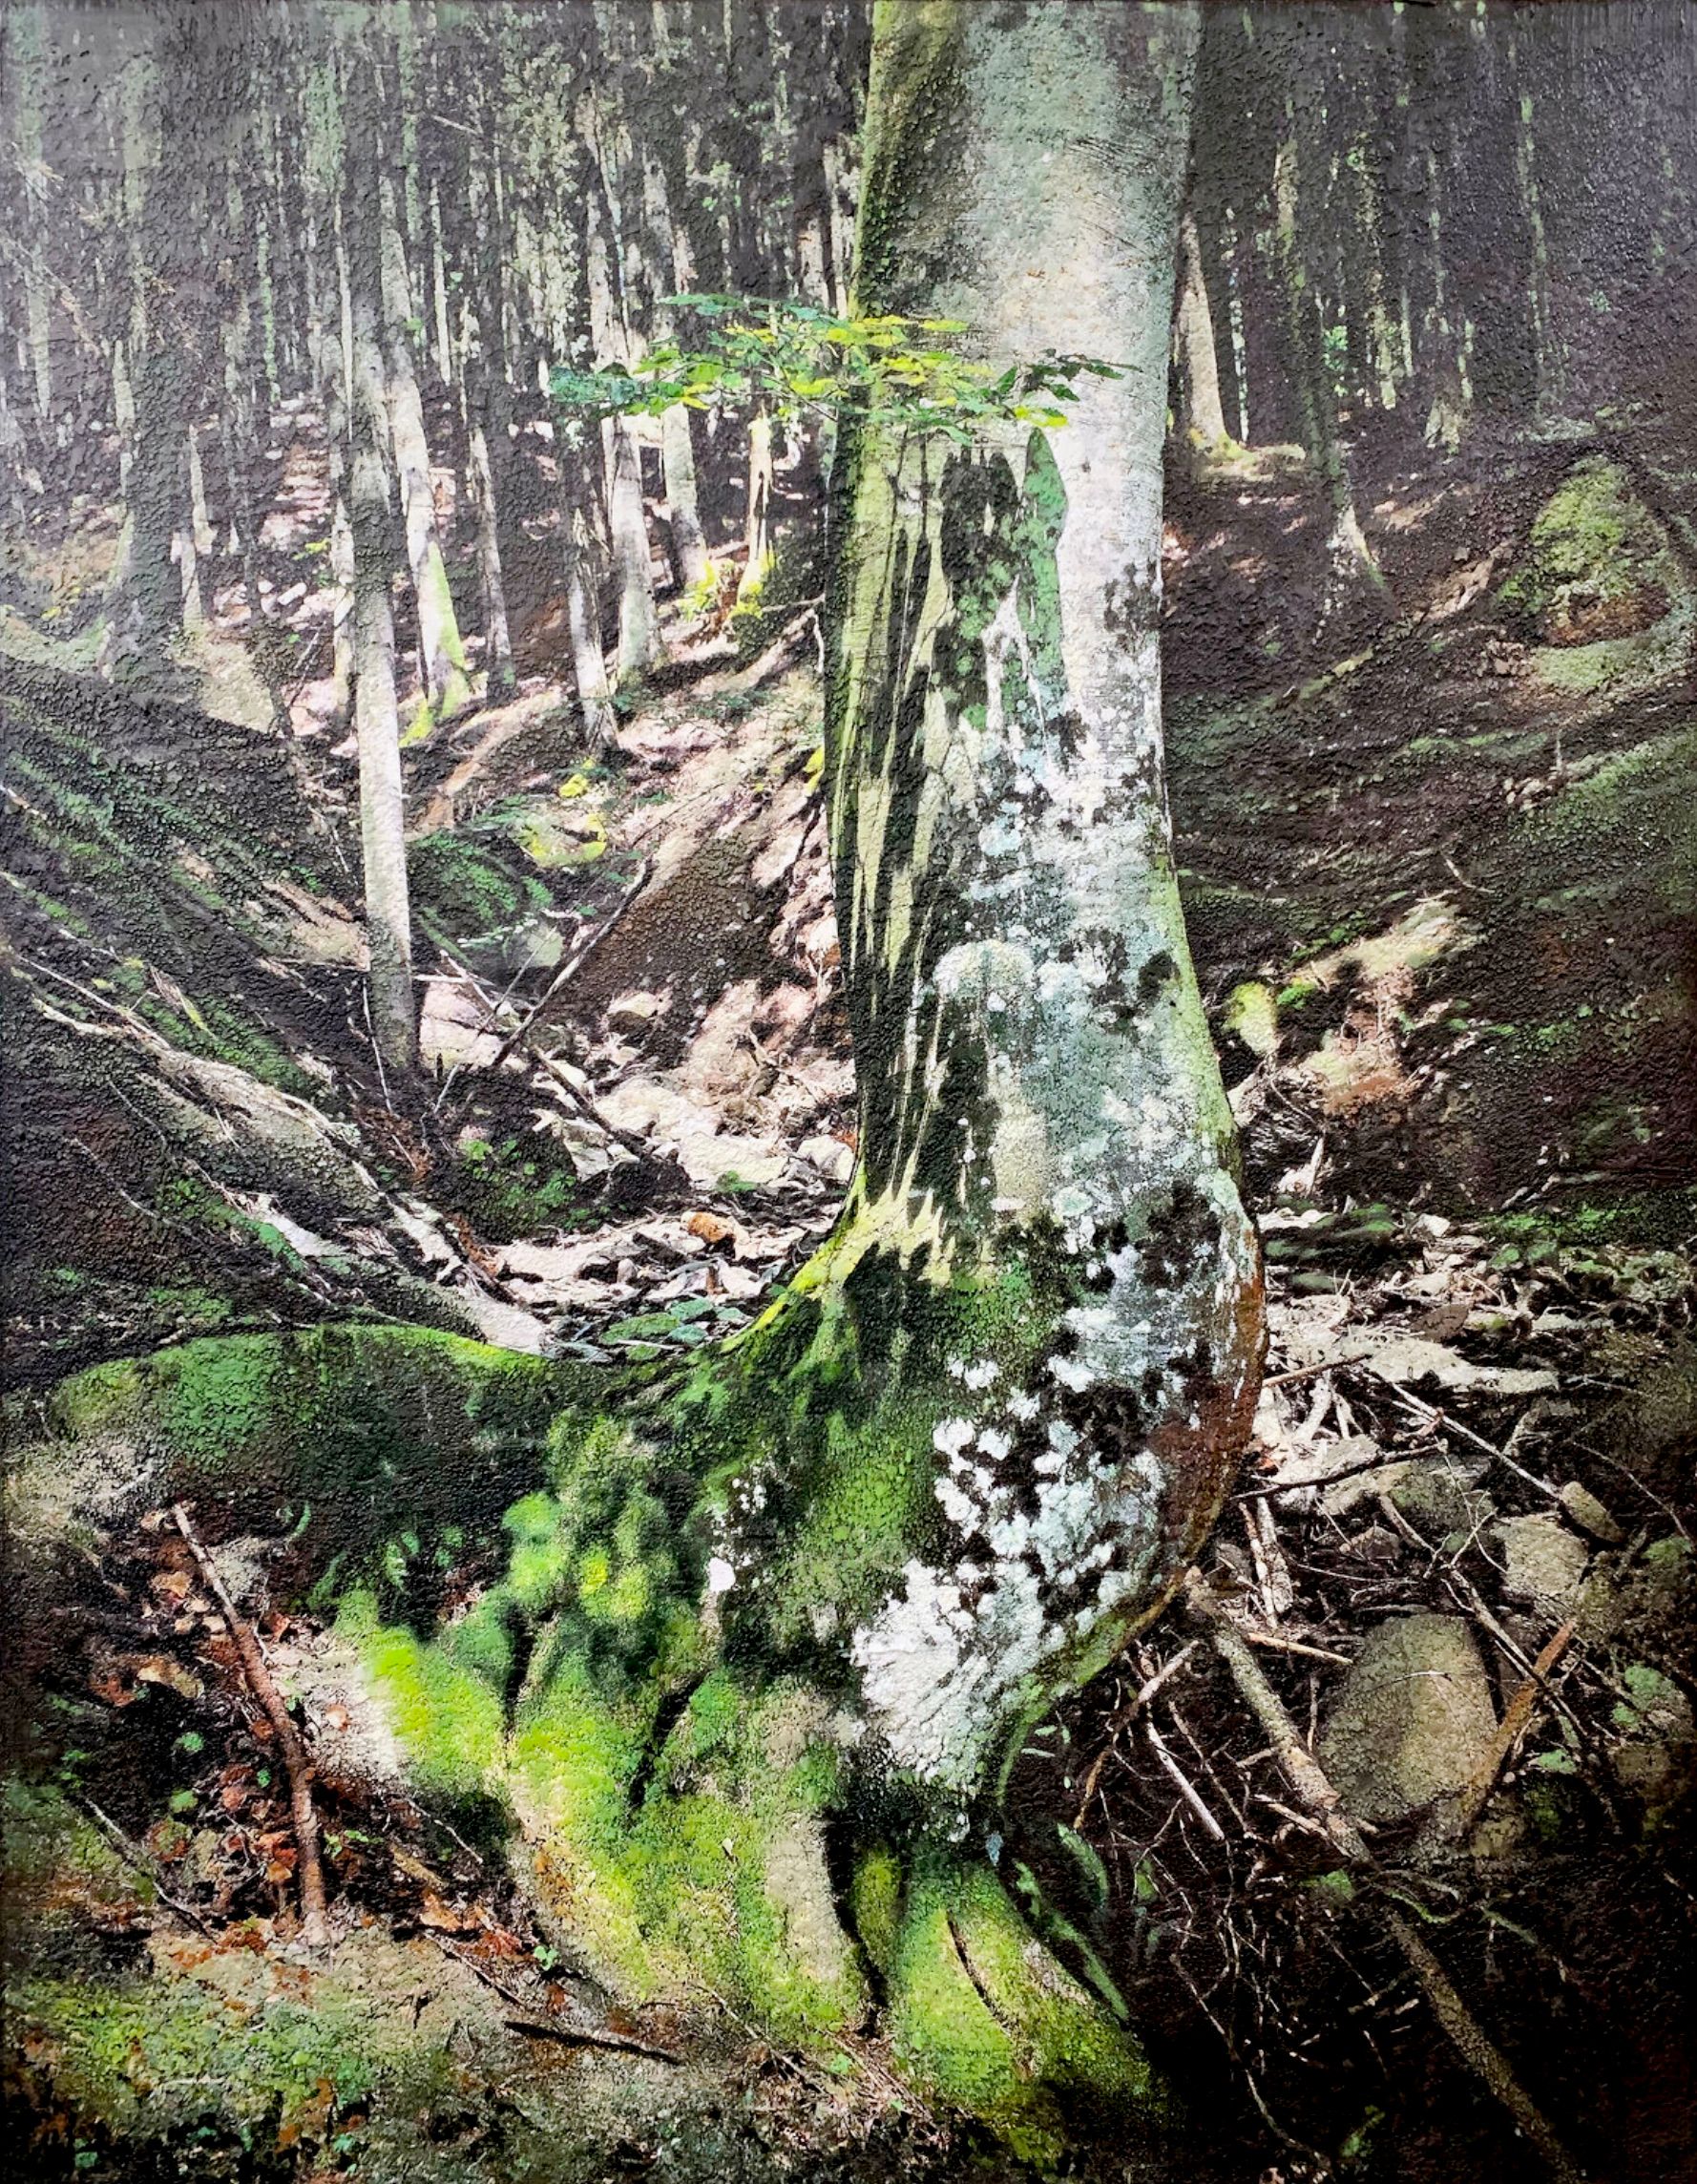 卡琳-维米尔的 "烧焦的树Brienenoord岛 "是将照片、绘画和拼贴的数字组合和处理成新的，这幅画是一个独特的艺术作品，有很多结构，非常细致。你几乎可以沉浸在这个森林景观中。